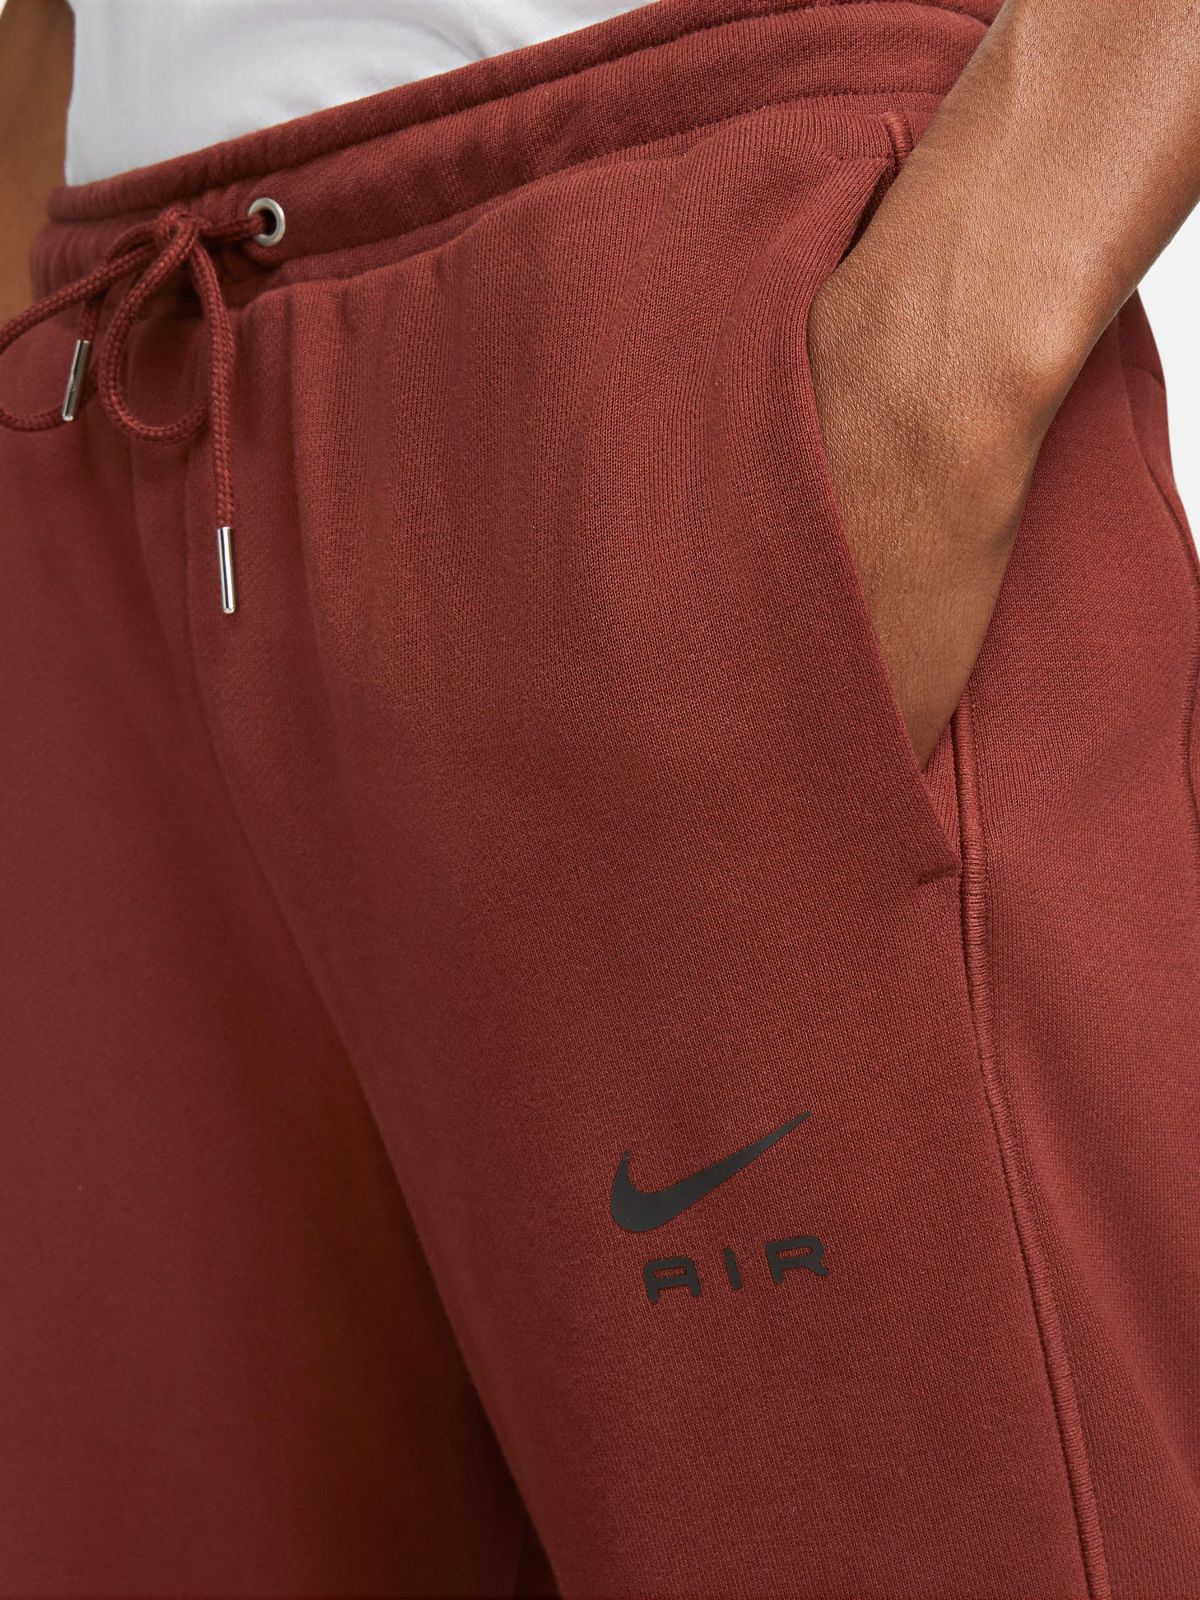  מכנסי טרנינג ארוכים Nike Sportswear Air של NIKE